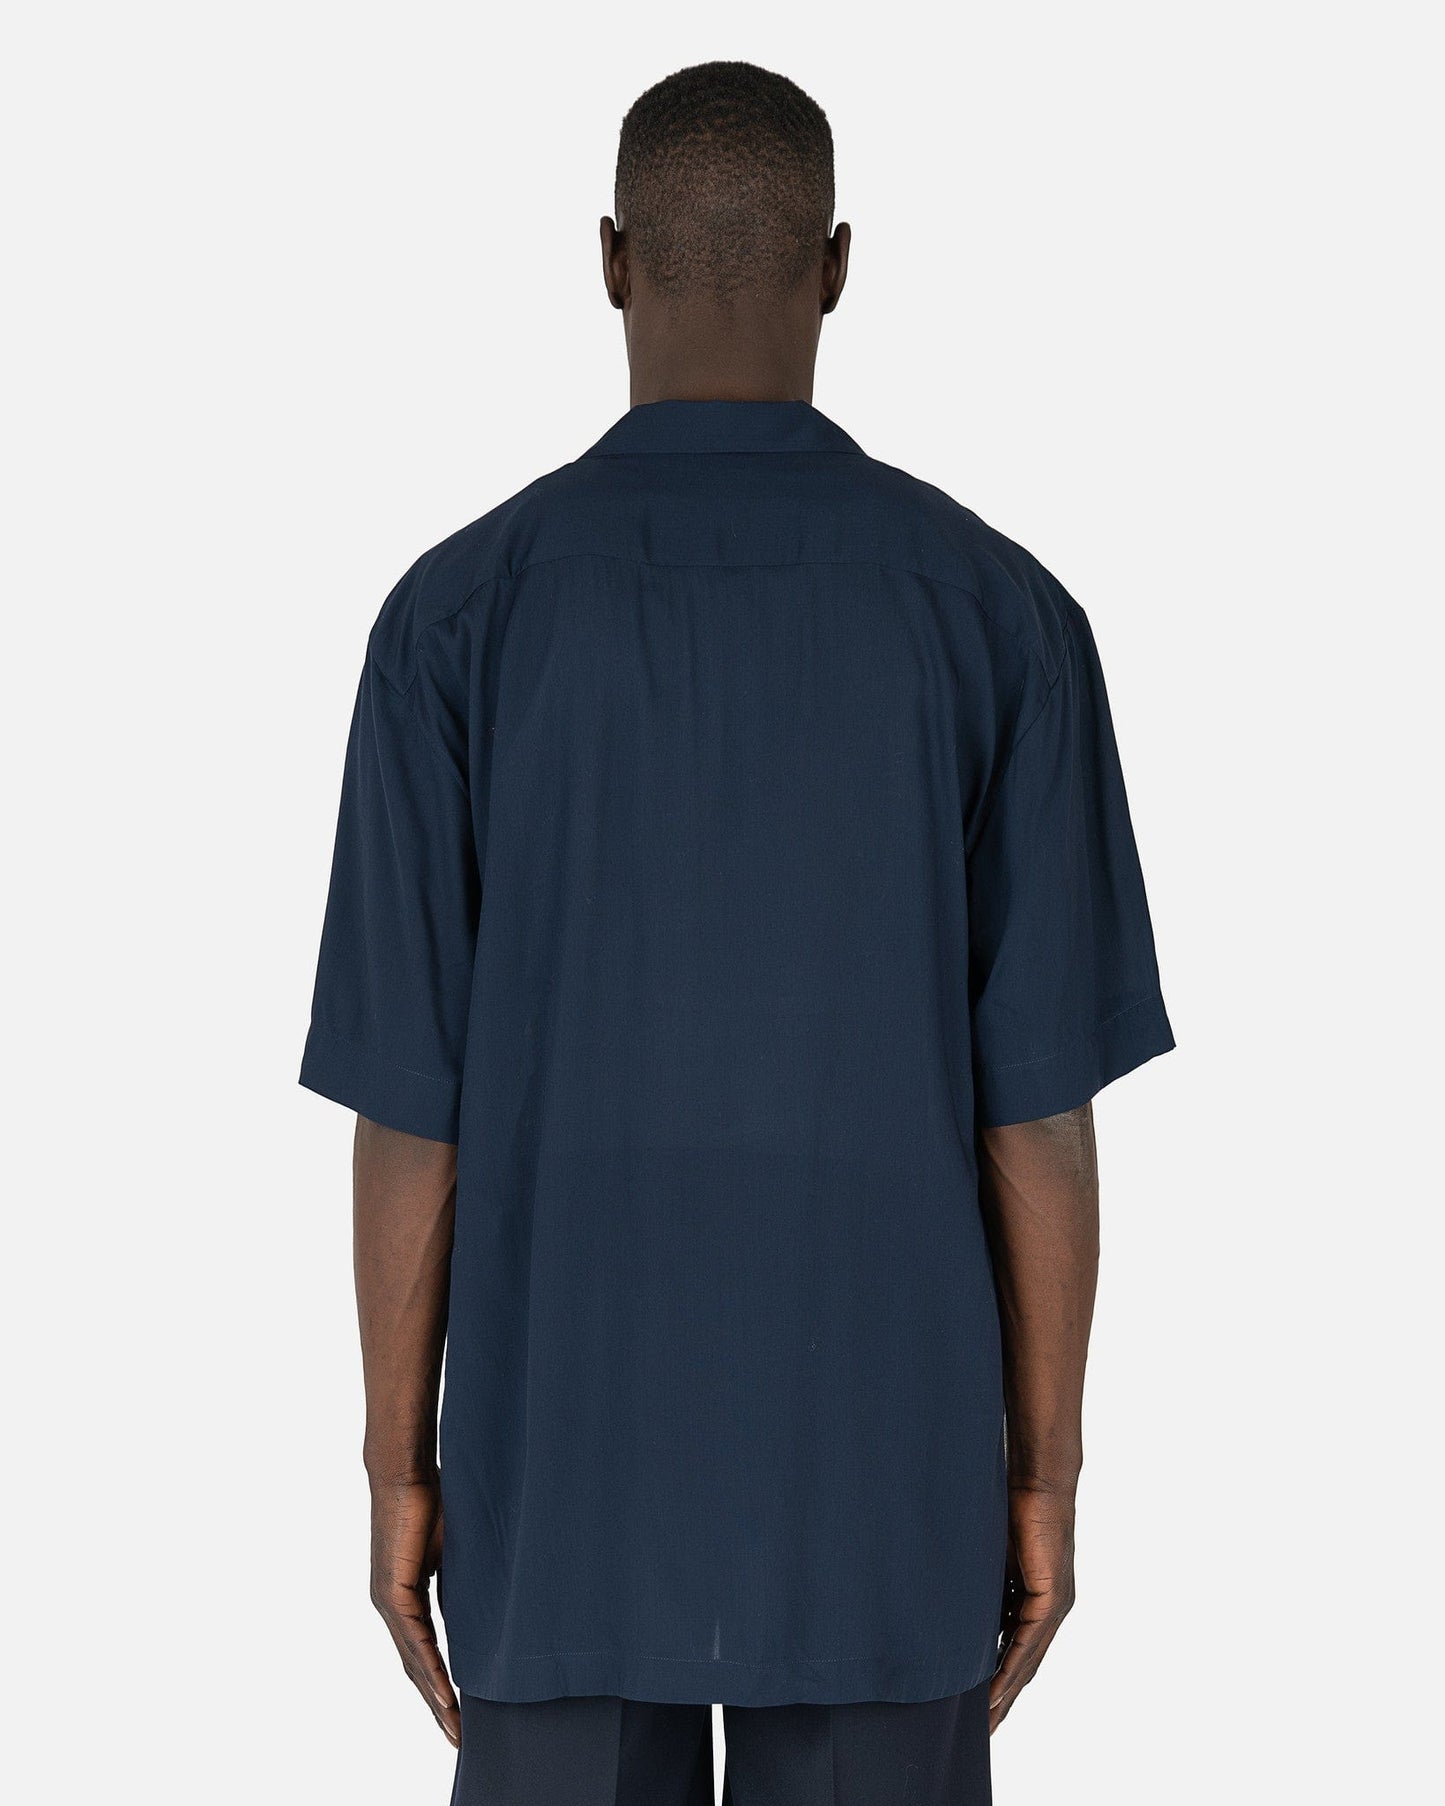 Dries Van Noten Men's Shirts Cassif Shirt in Ecru